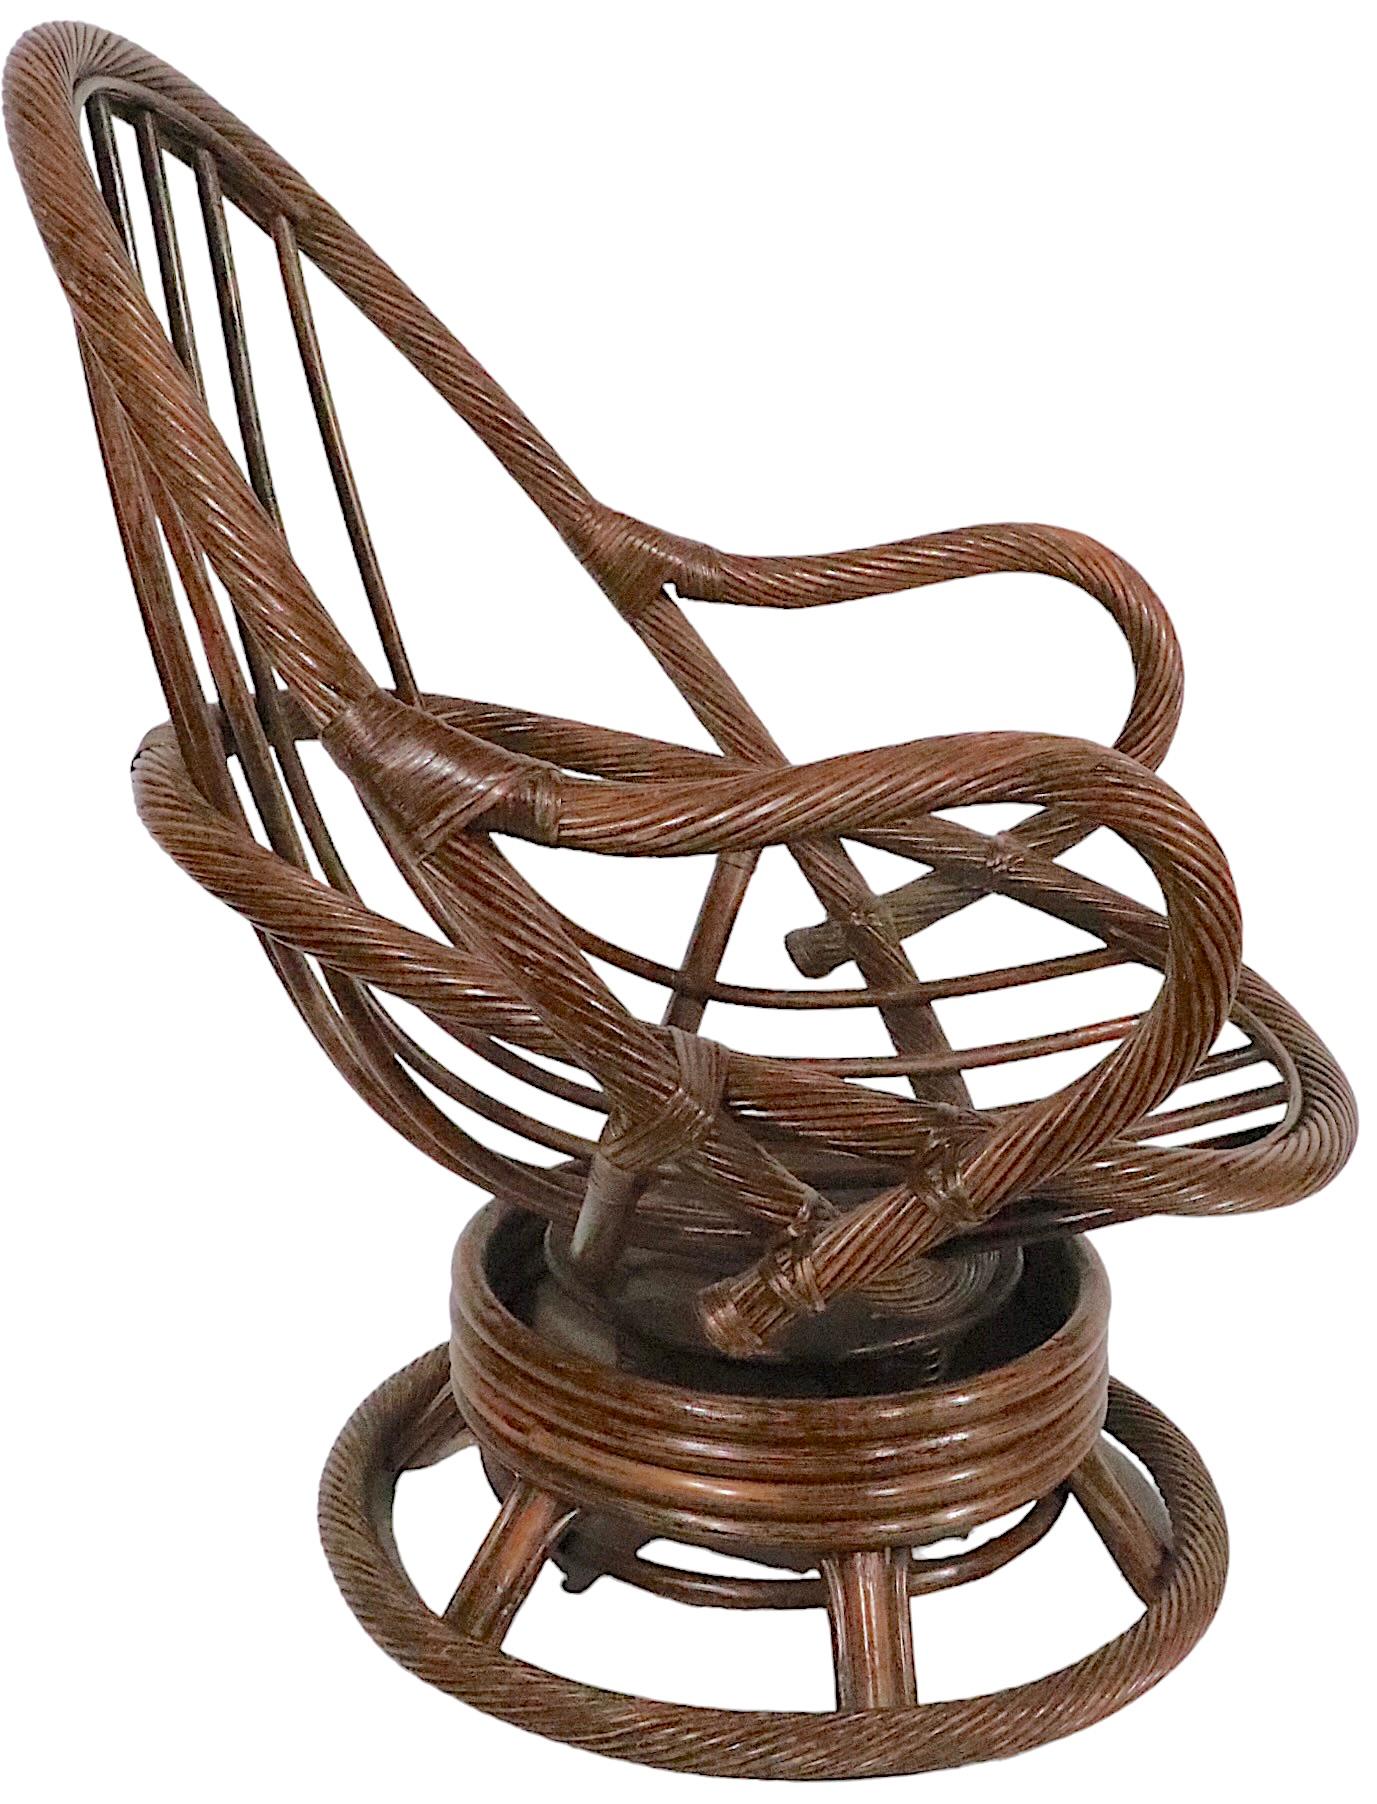 Pivot vintage des années 1970 de qualité supérieure, et  inclinaison  Chaise longue en rotin enroulé et bambou, avec coussin d'assise rembourré d'origine. Cet exemple est inhabituel car la plupart des chaises de ce type ont une structure en bambou,